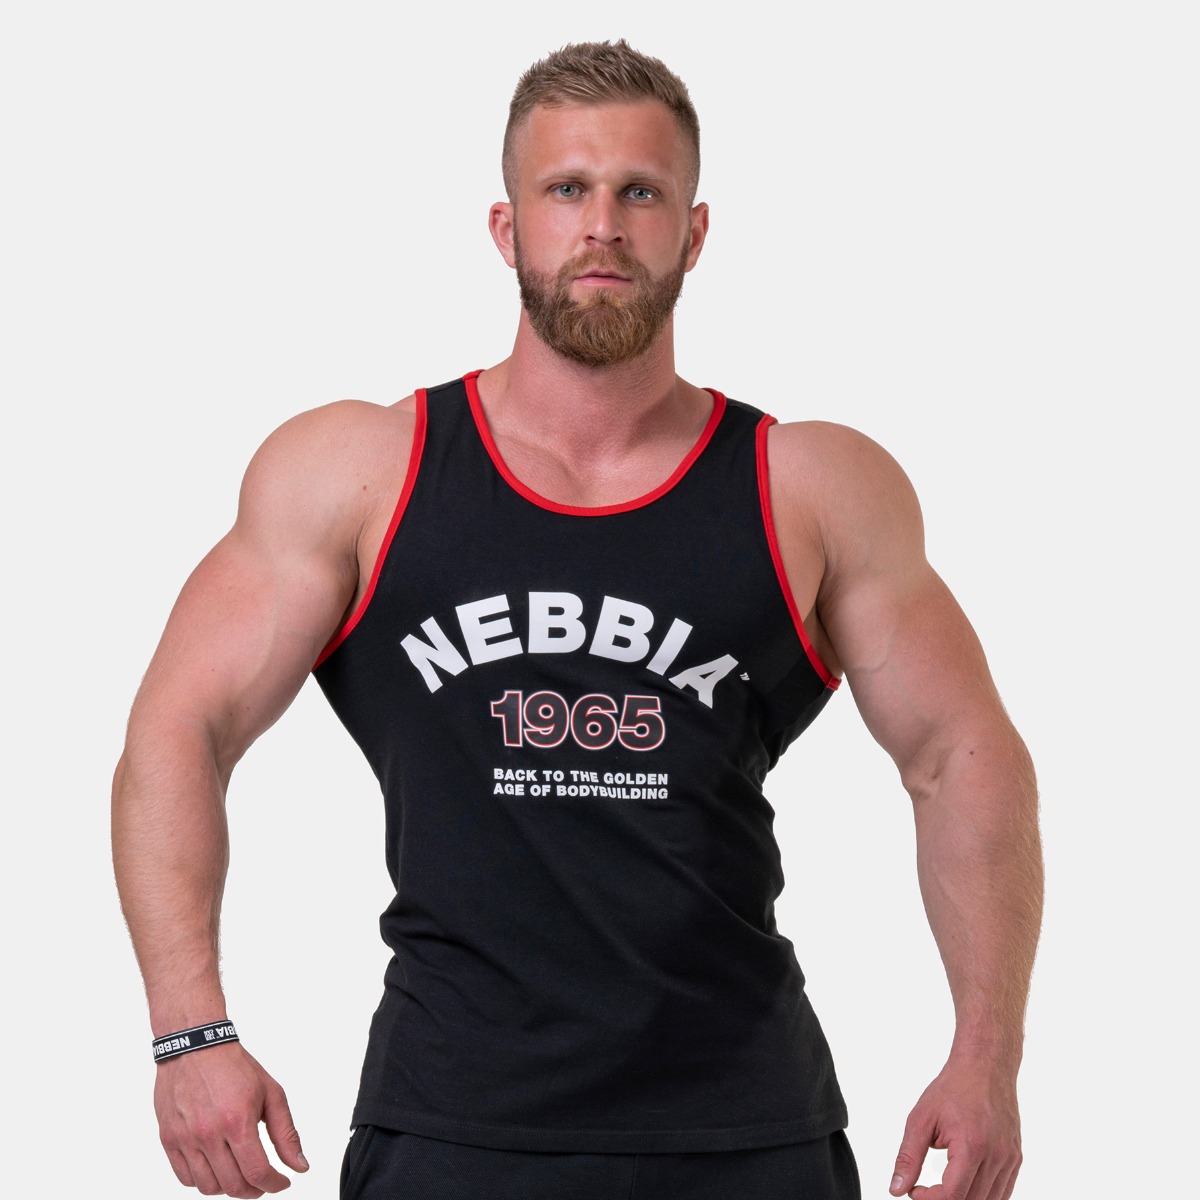 Nebbia Old School Muscle Tank Top 193 Bodybuilding Fitness Gym Wear Schwarz Grau 